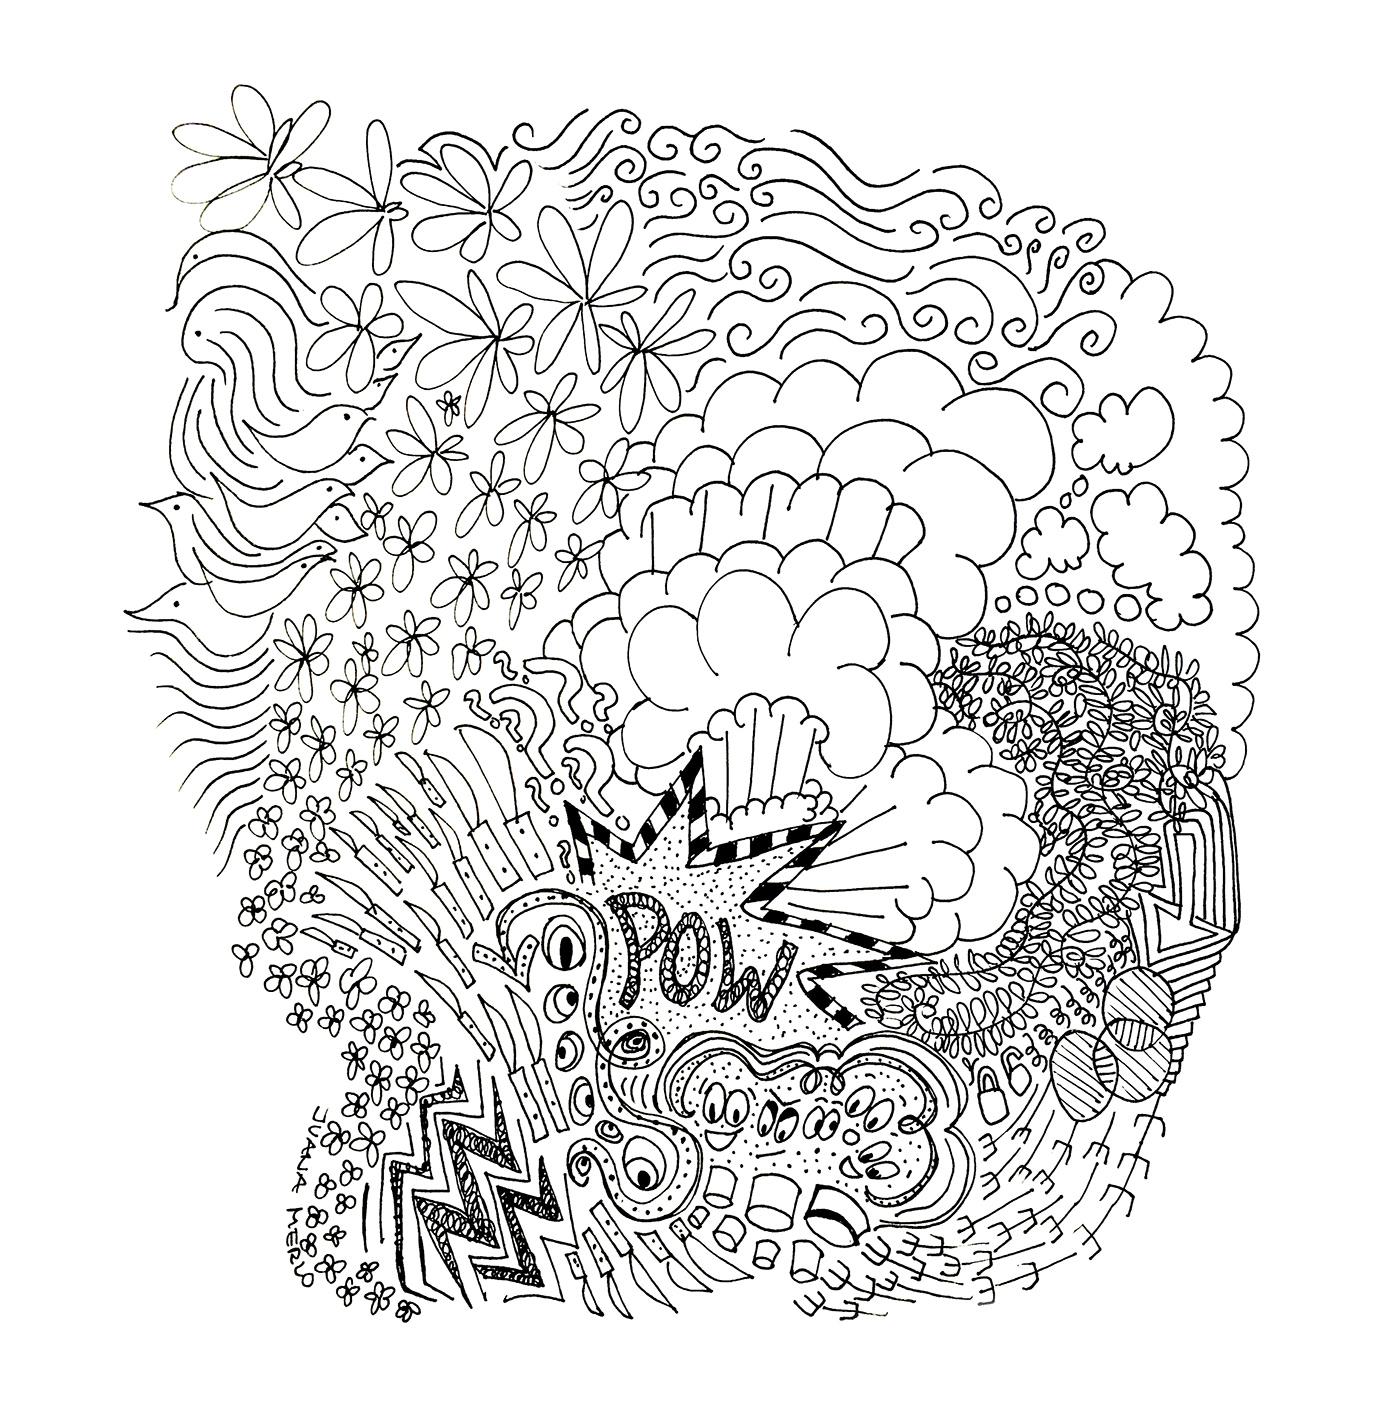 Adobe Portfolio ILLUSTRATION  podcast NPR doodles black ink